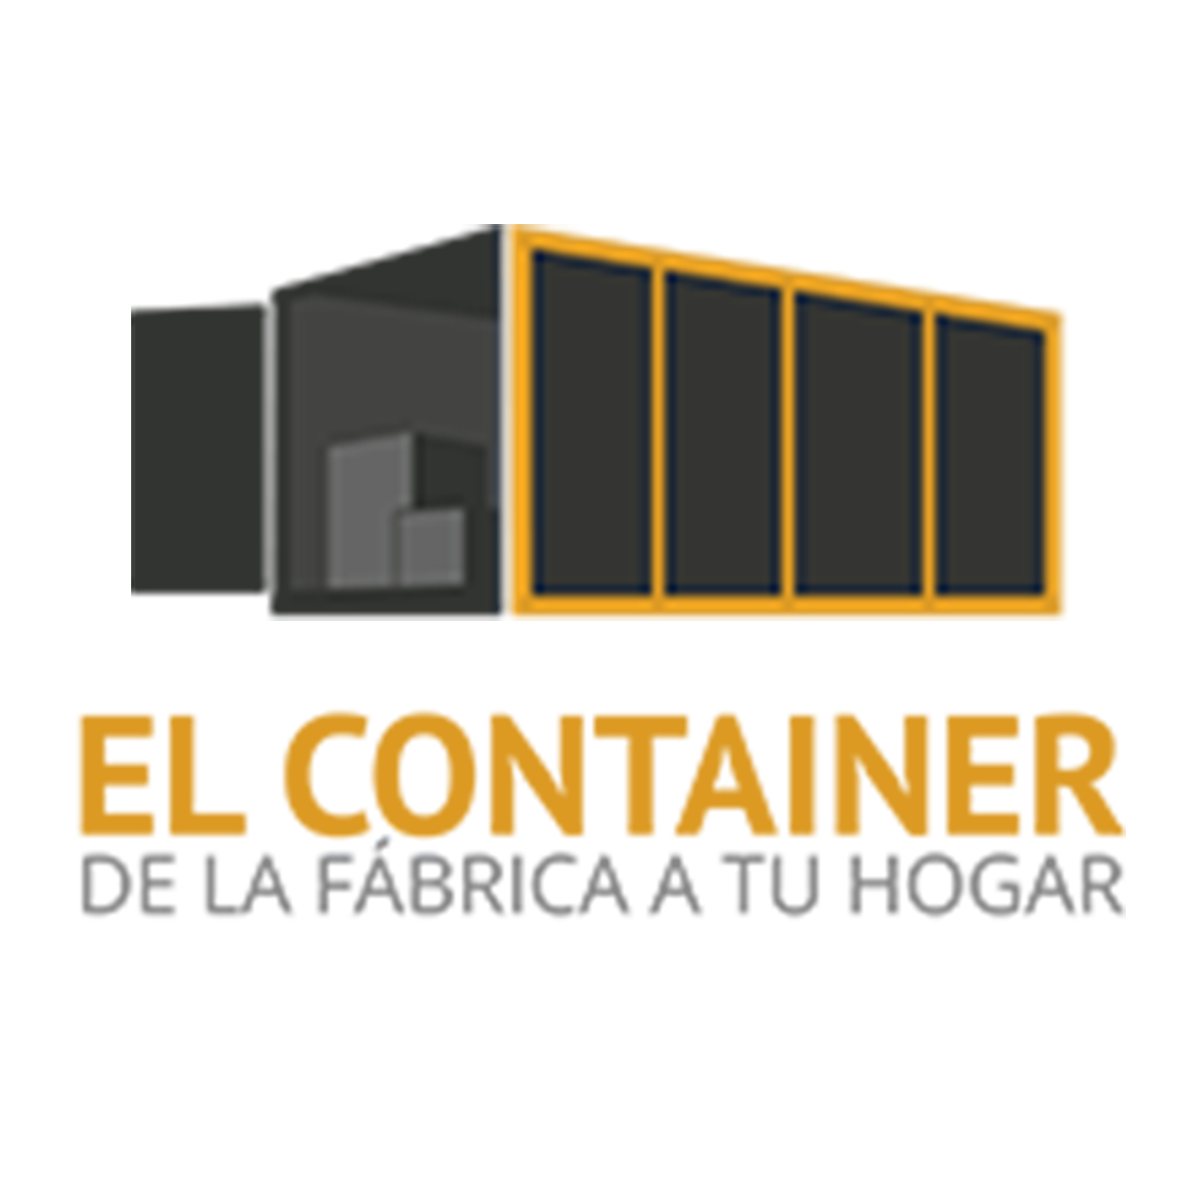 El Container